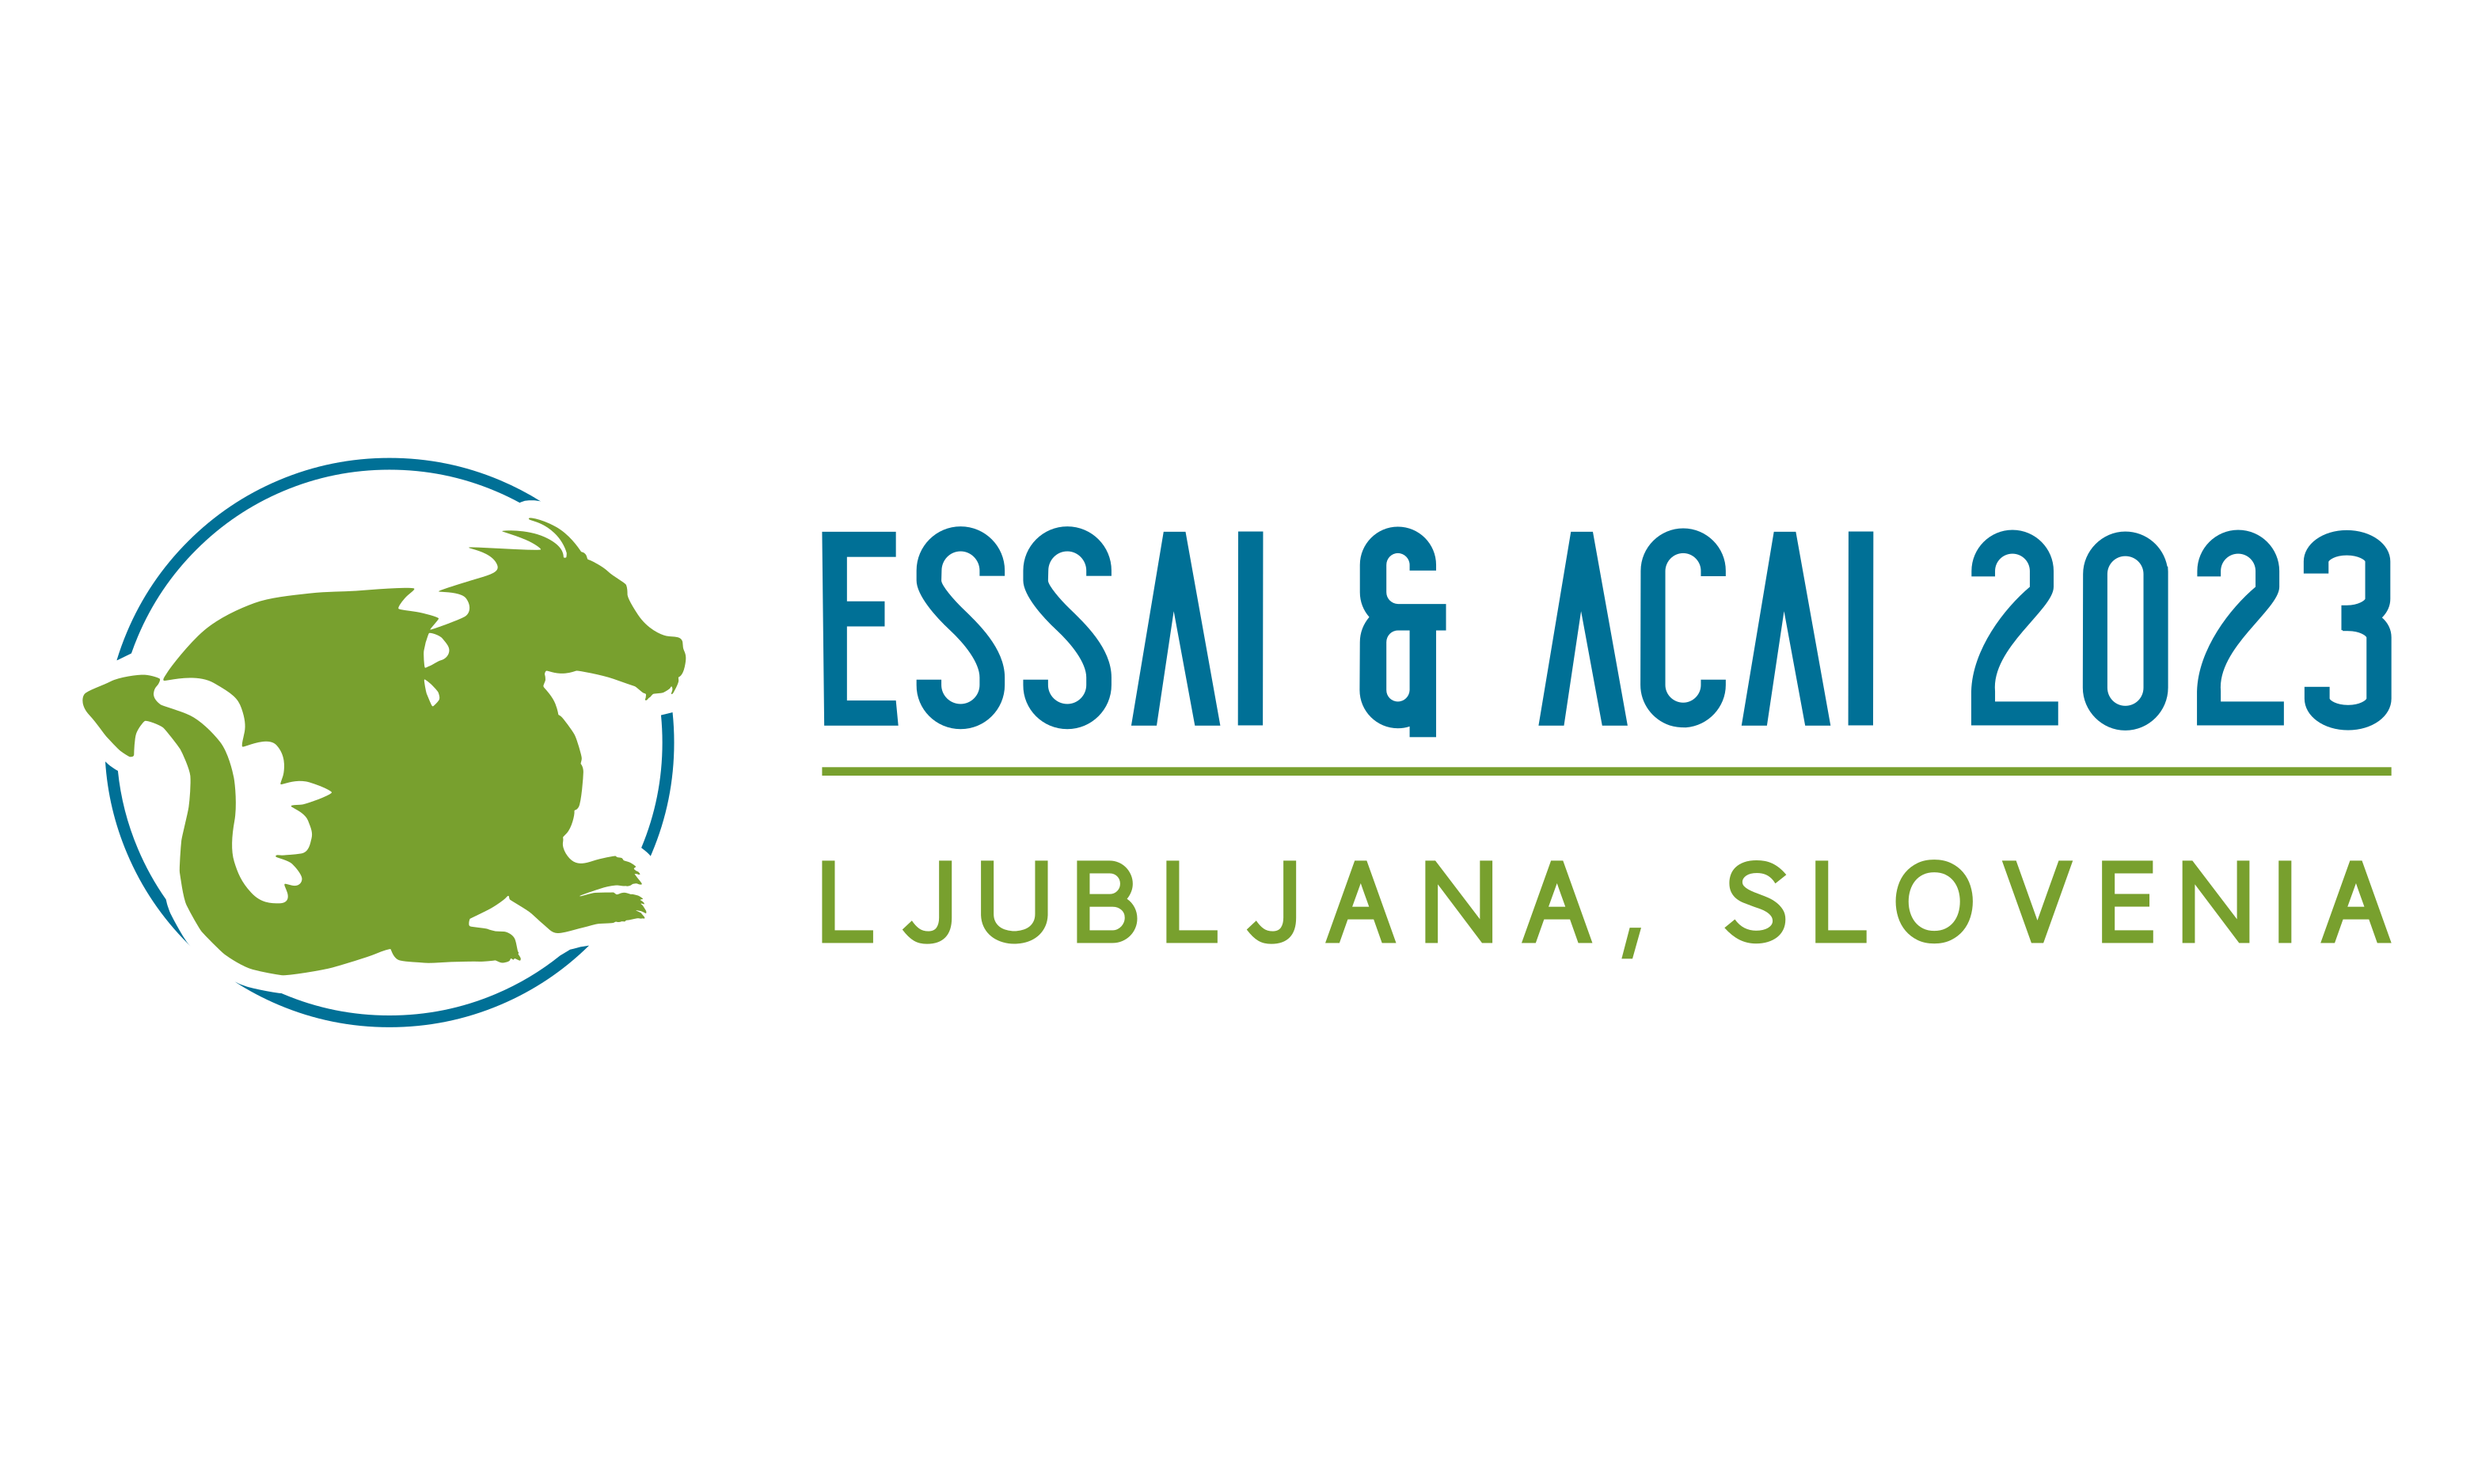 ESSAI 2023 logo